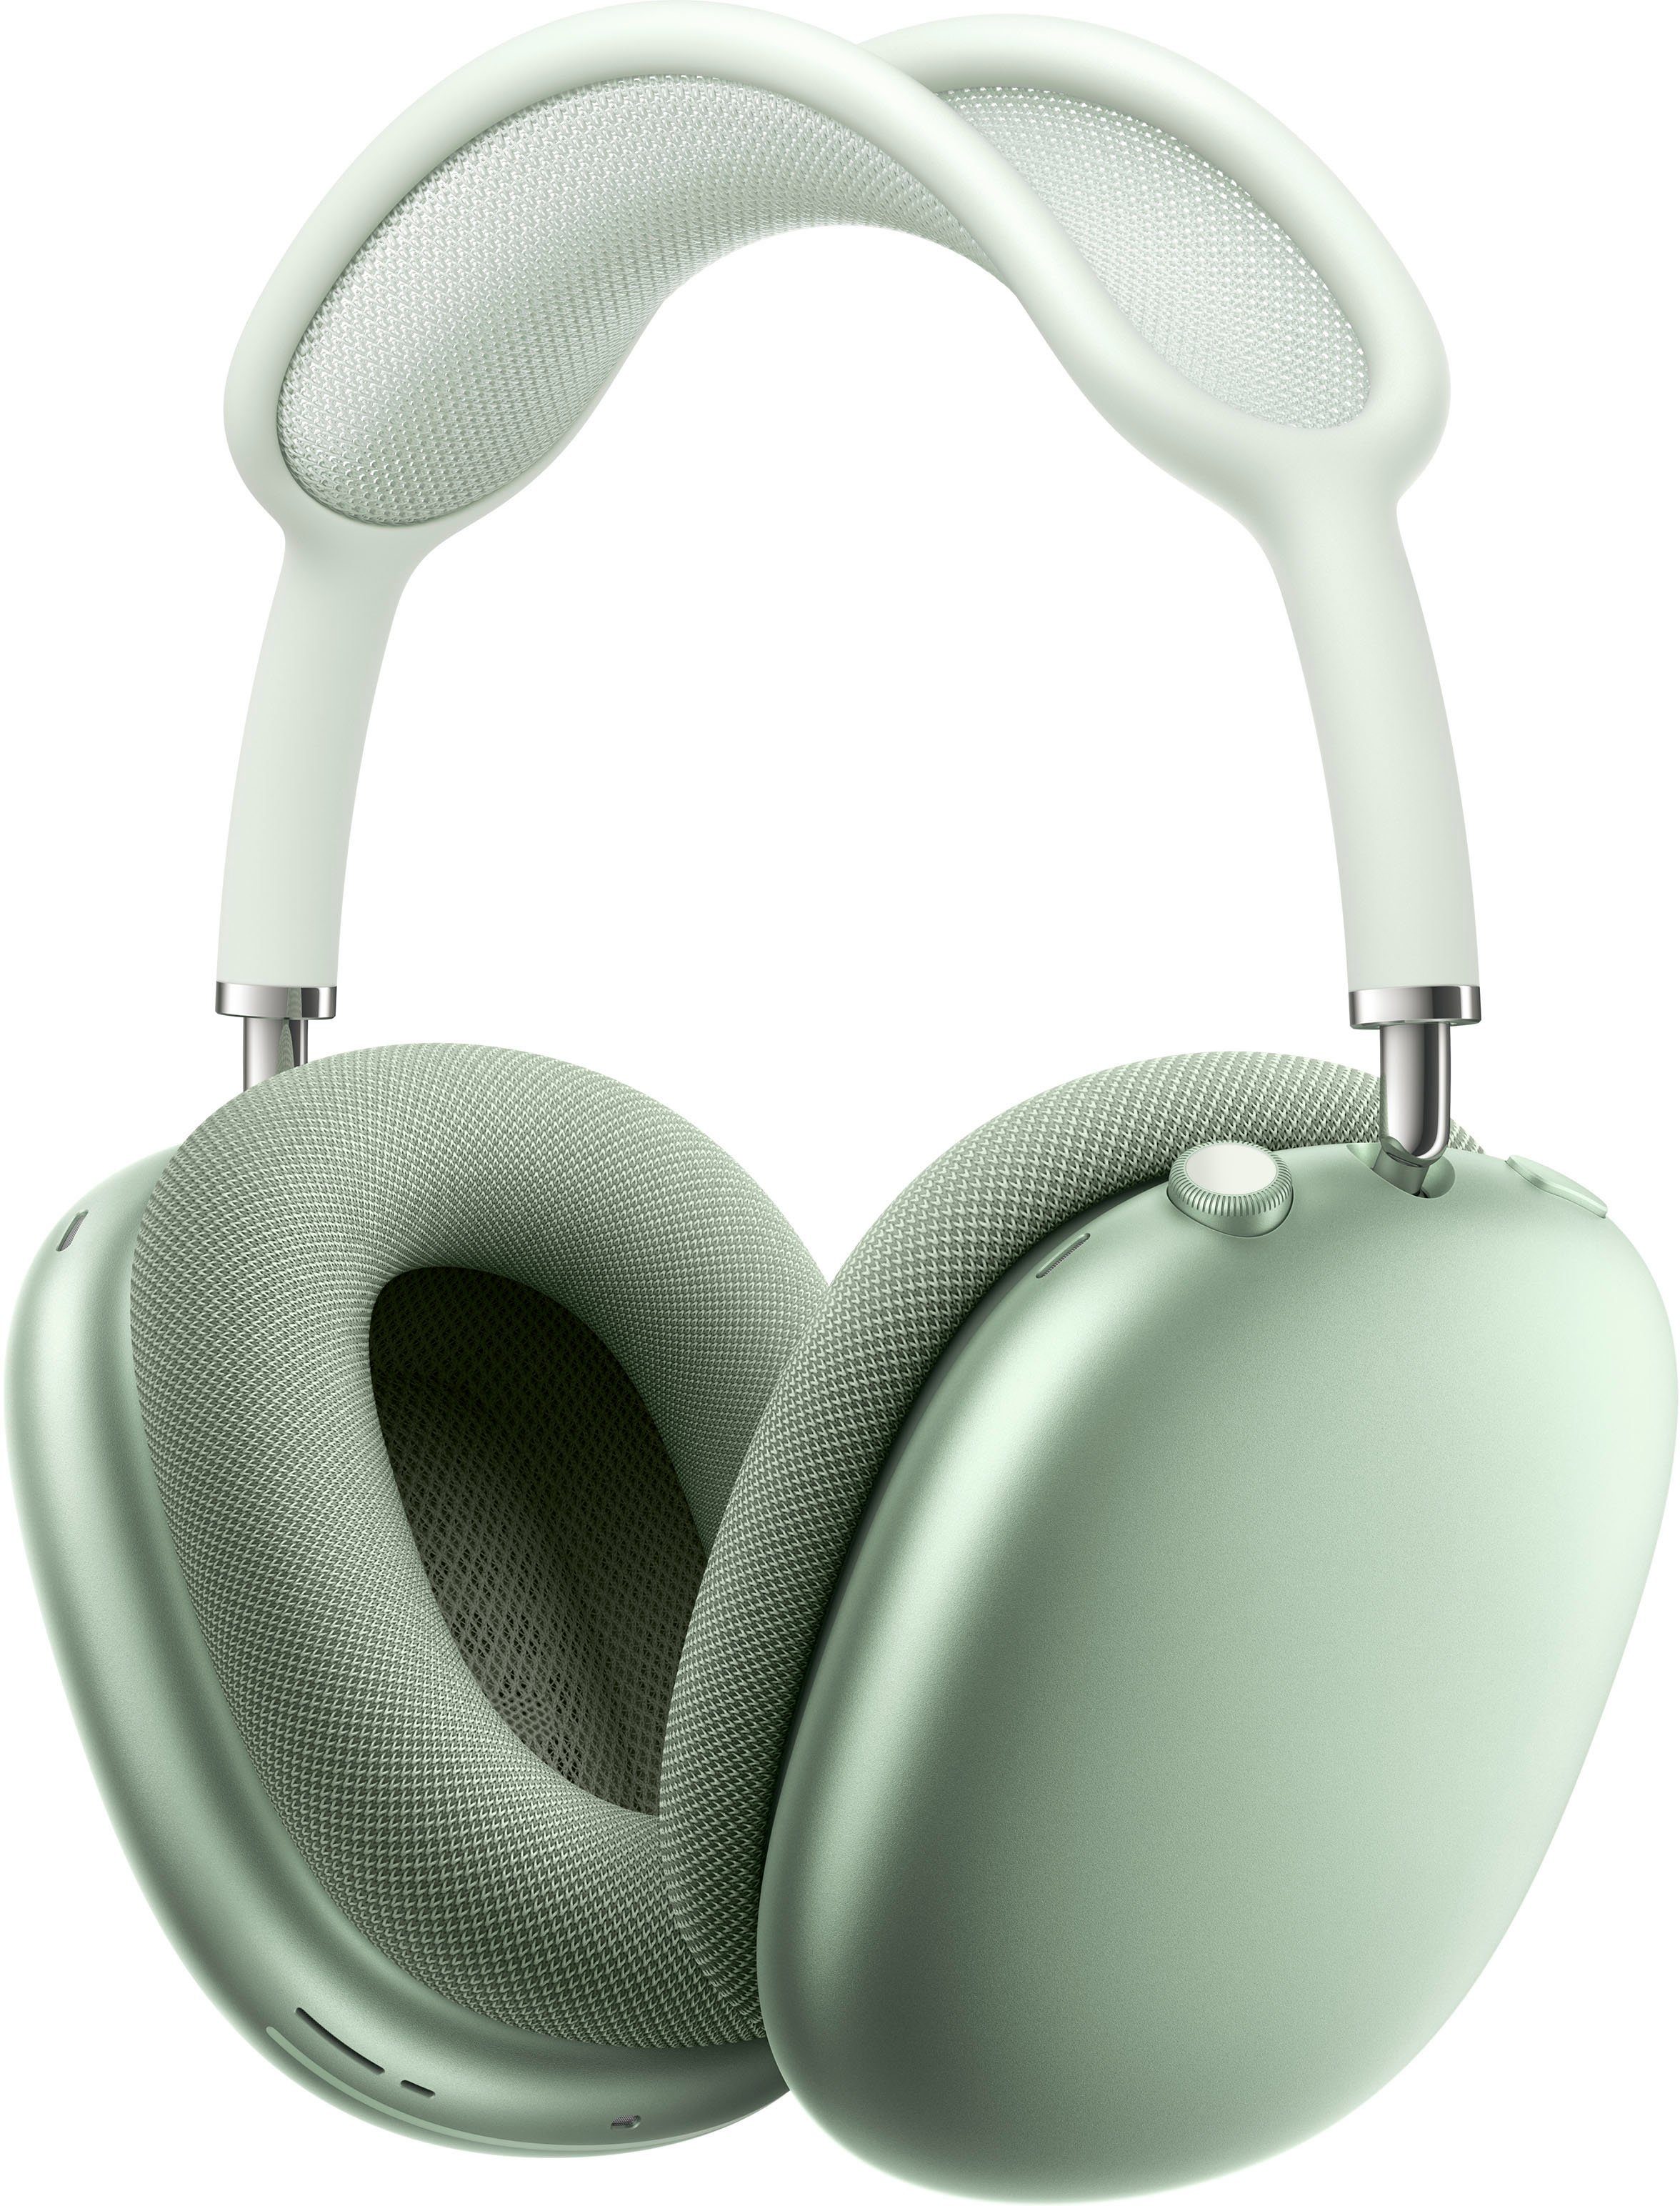 Apple AirPods Max Over-Ear-Kopfhörer (Active Noise Cancelling (ANC), Rauschunterdrückung, Sprachsteuerung, Transparenzmodus, integrierte Steuerung für Anrufe und Musik, kompatibel mit Siri, Siri, Bluetooth) Grün | Over-Ear-Kopfhörer